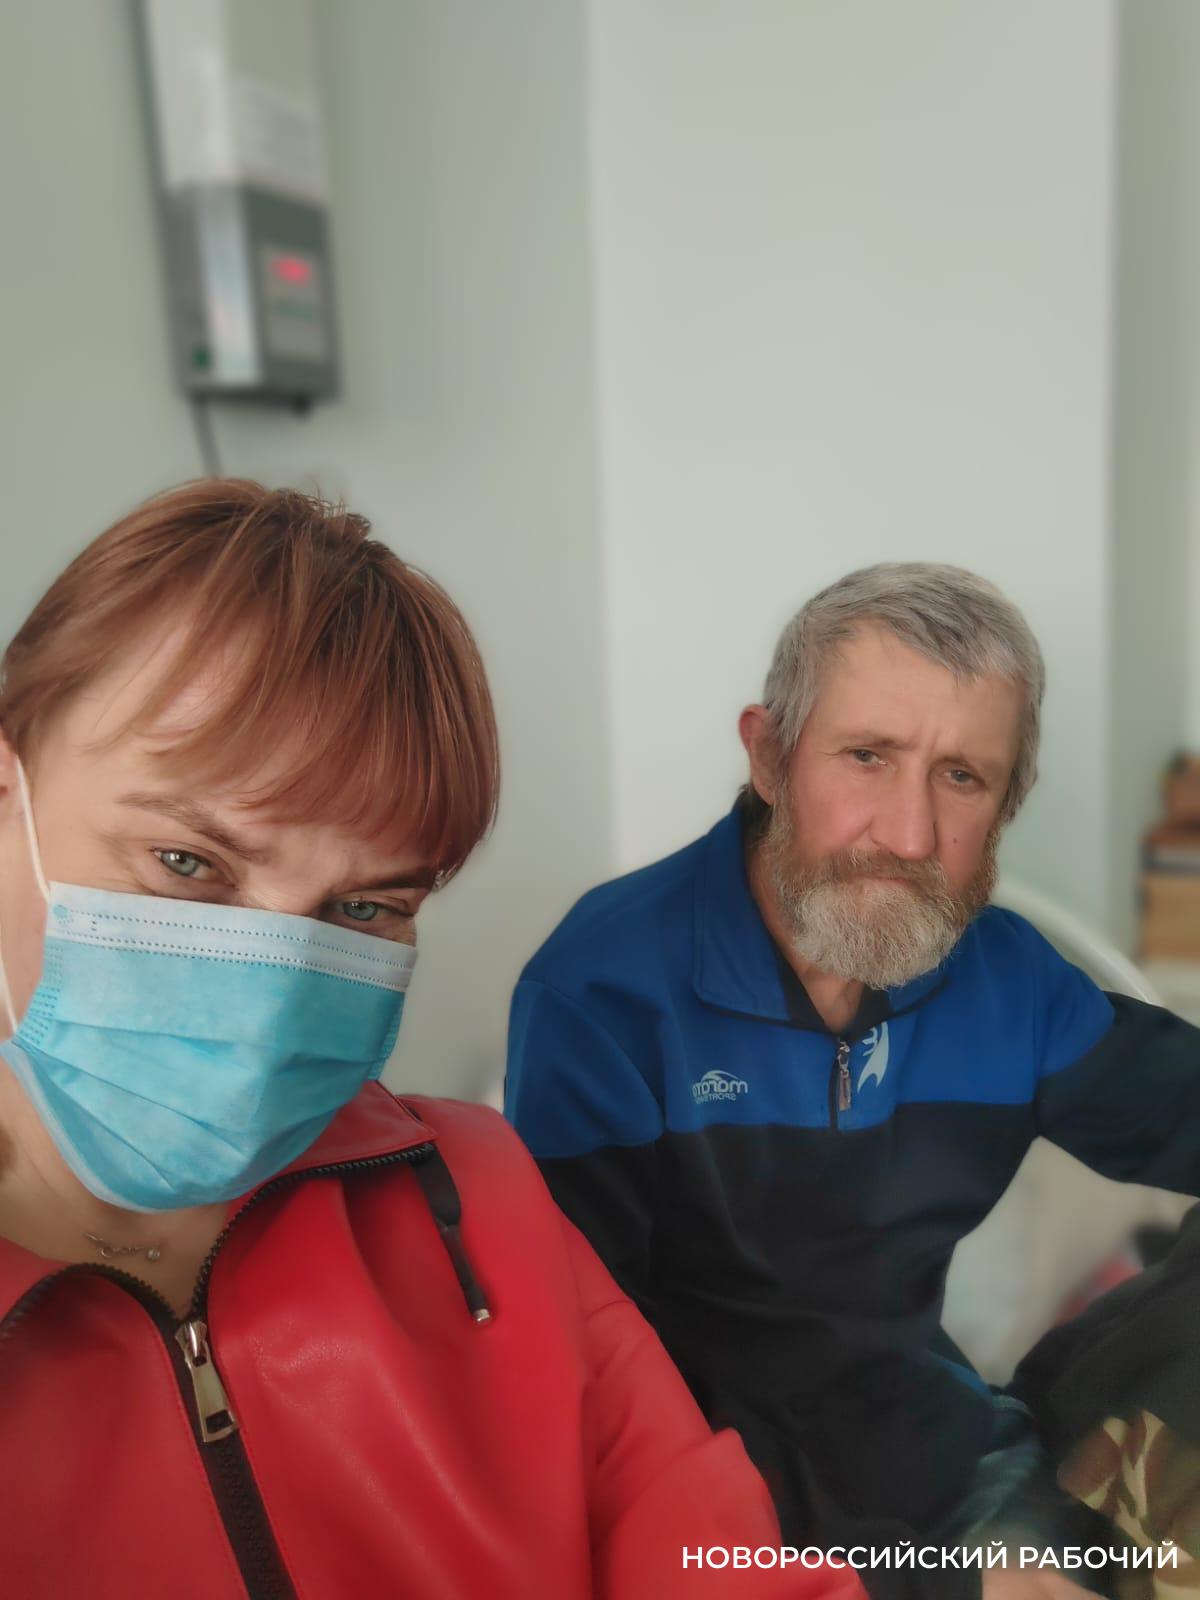 Бродяга, спасенный два года назад под Новороссийском, излечился от туберкулеза и получил паспорт. Благодаря неравнодушным людям. А вам слабо?